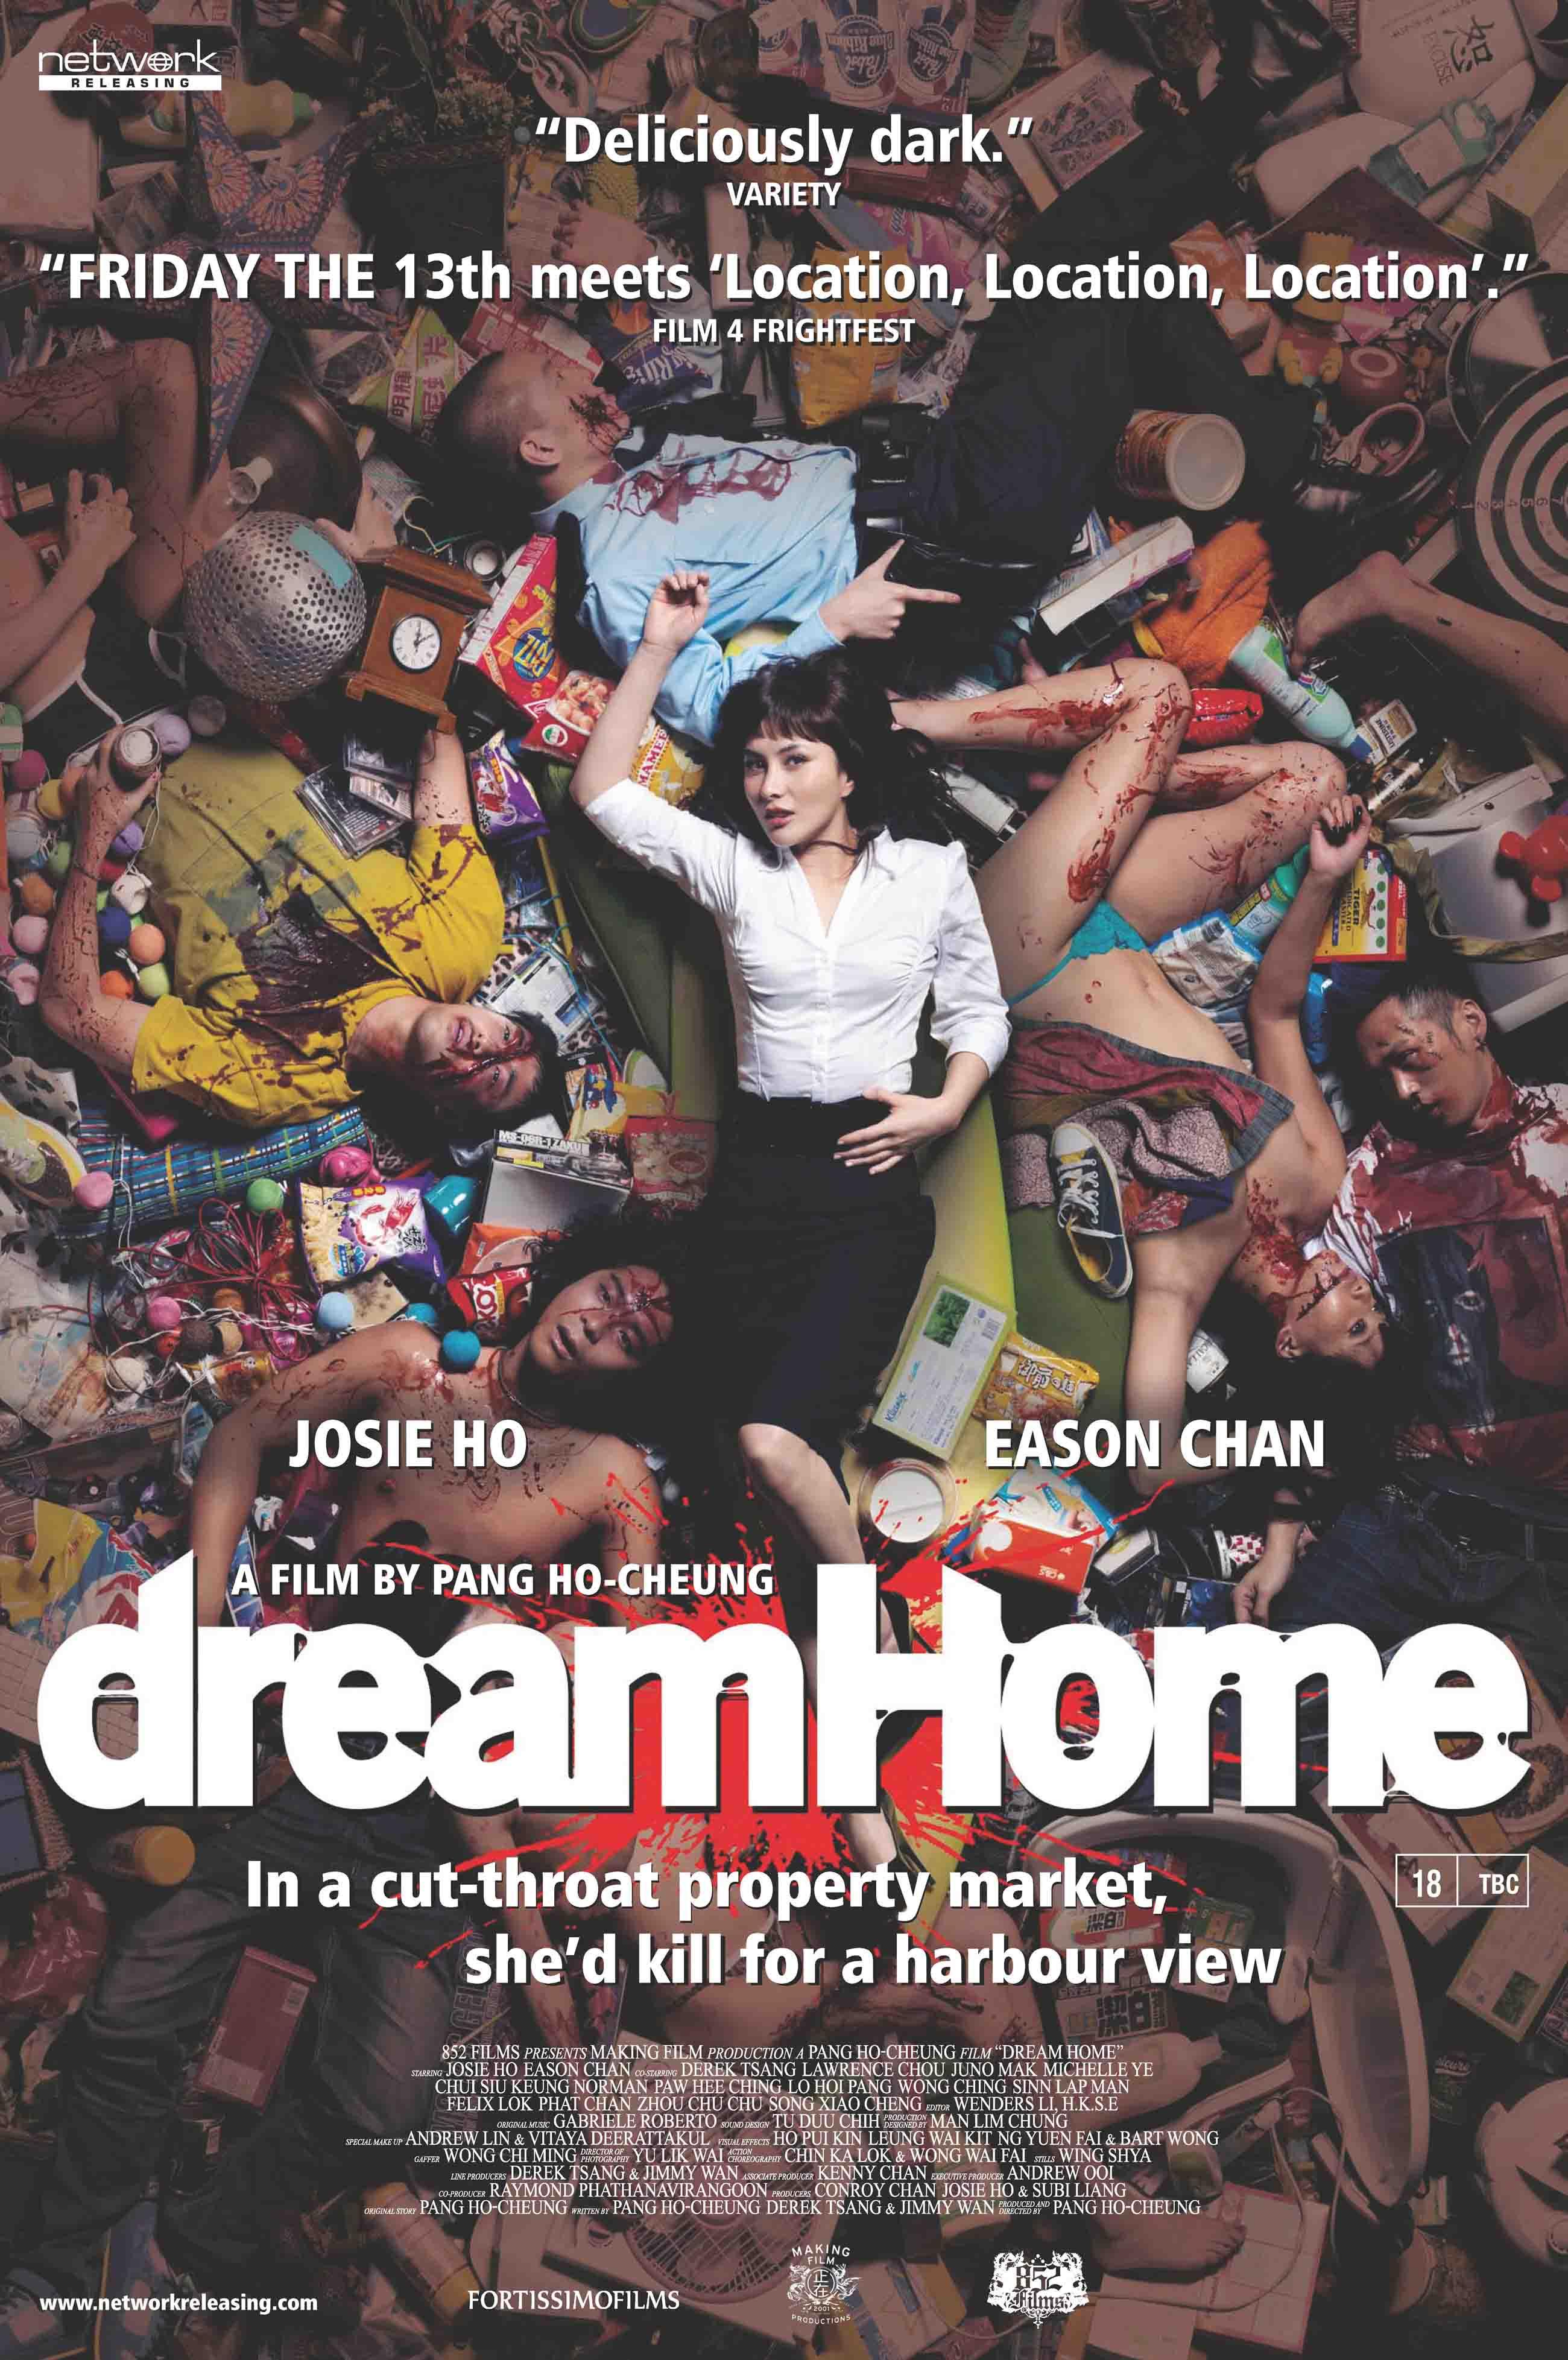 http://www.brutalashell.com/wp-content/uploads/2010/11/Dream-Home-Poster.jpg